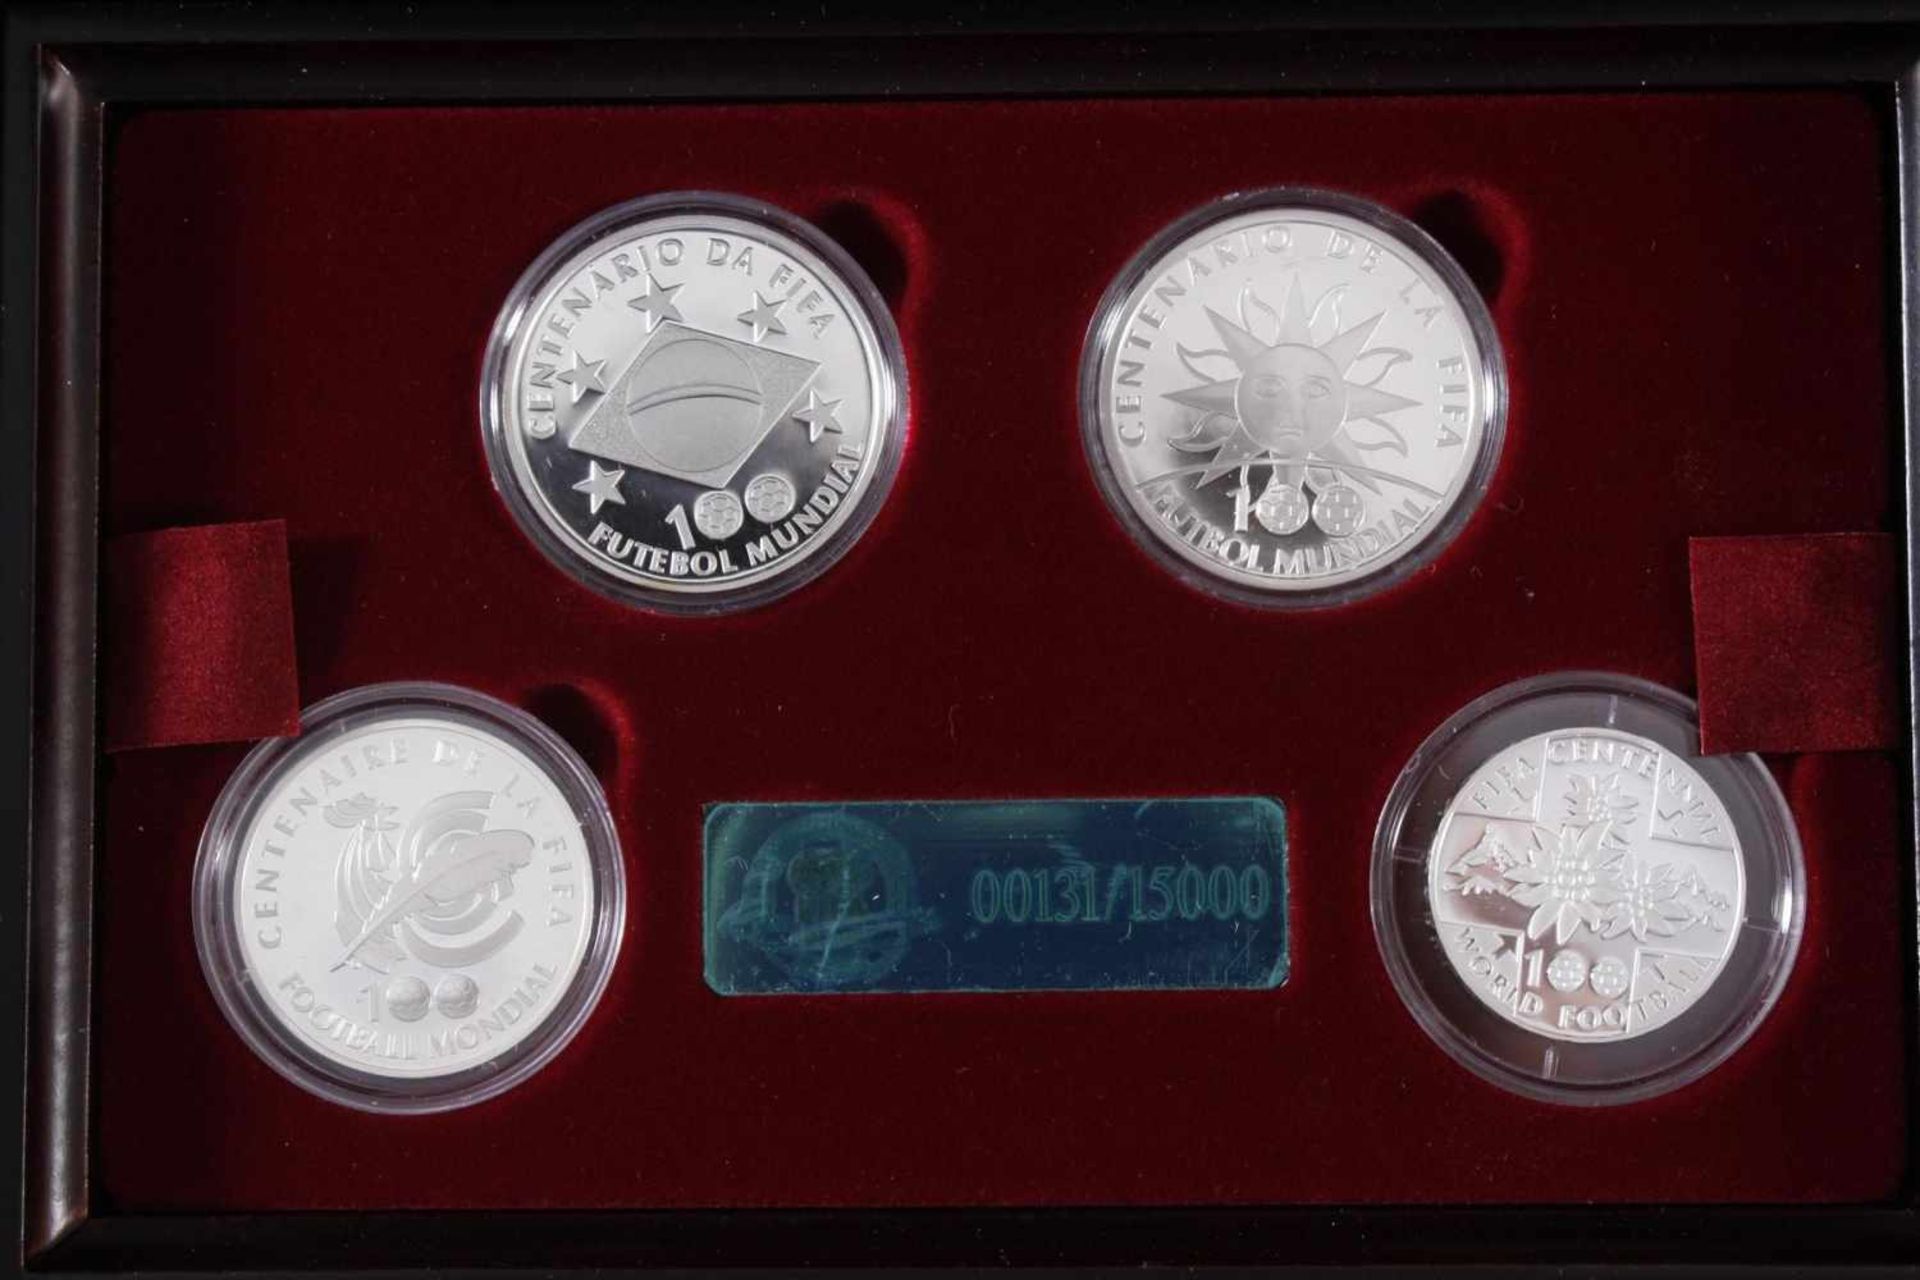 100 Jahre Fifa, die offiziellen Silber-Gedenkmünzen 20042 Reais Brasilien 925er Silber. 1 1/2 Euro - Bild 2 aus 5